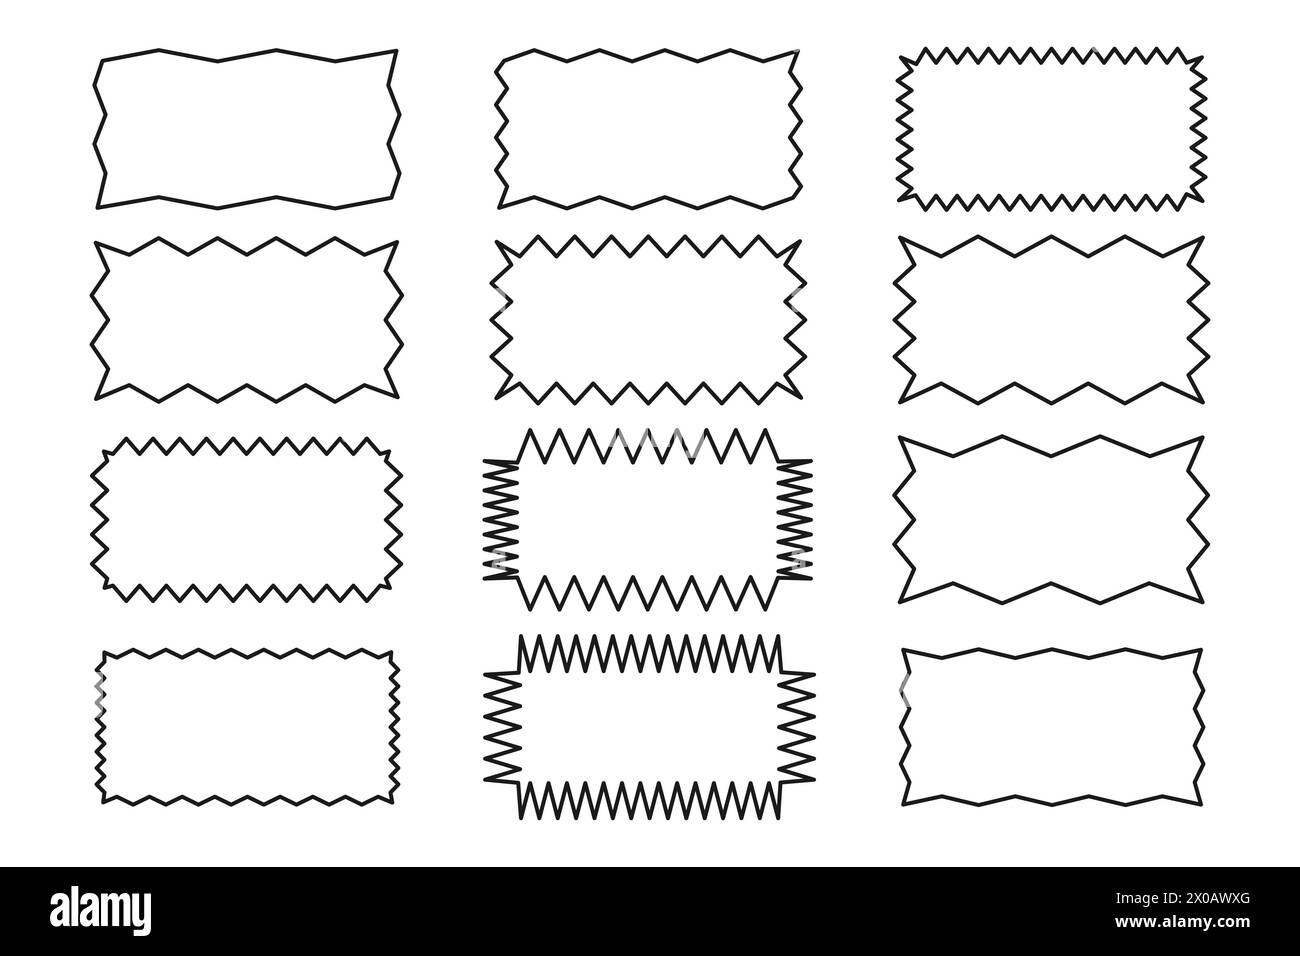 Contorno di un rettangolo frastagliato. Una serie di bordi rettangolari con un bordo zigzag irregolare. Colore nero. Elementi di progettazione per casella di testo, pulsante, icona, tag, b Illustrazione Vettoriale